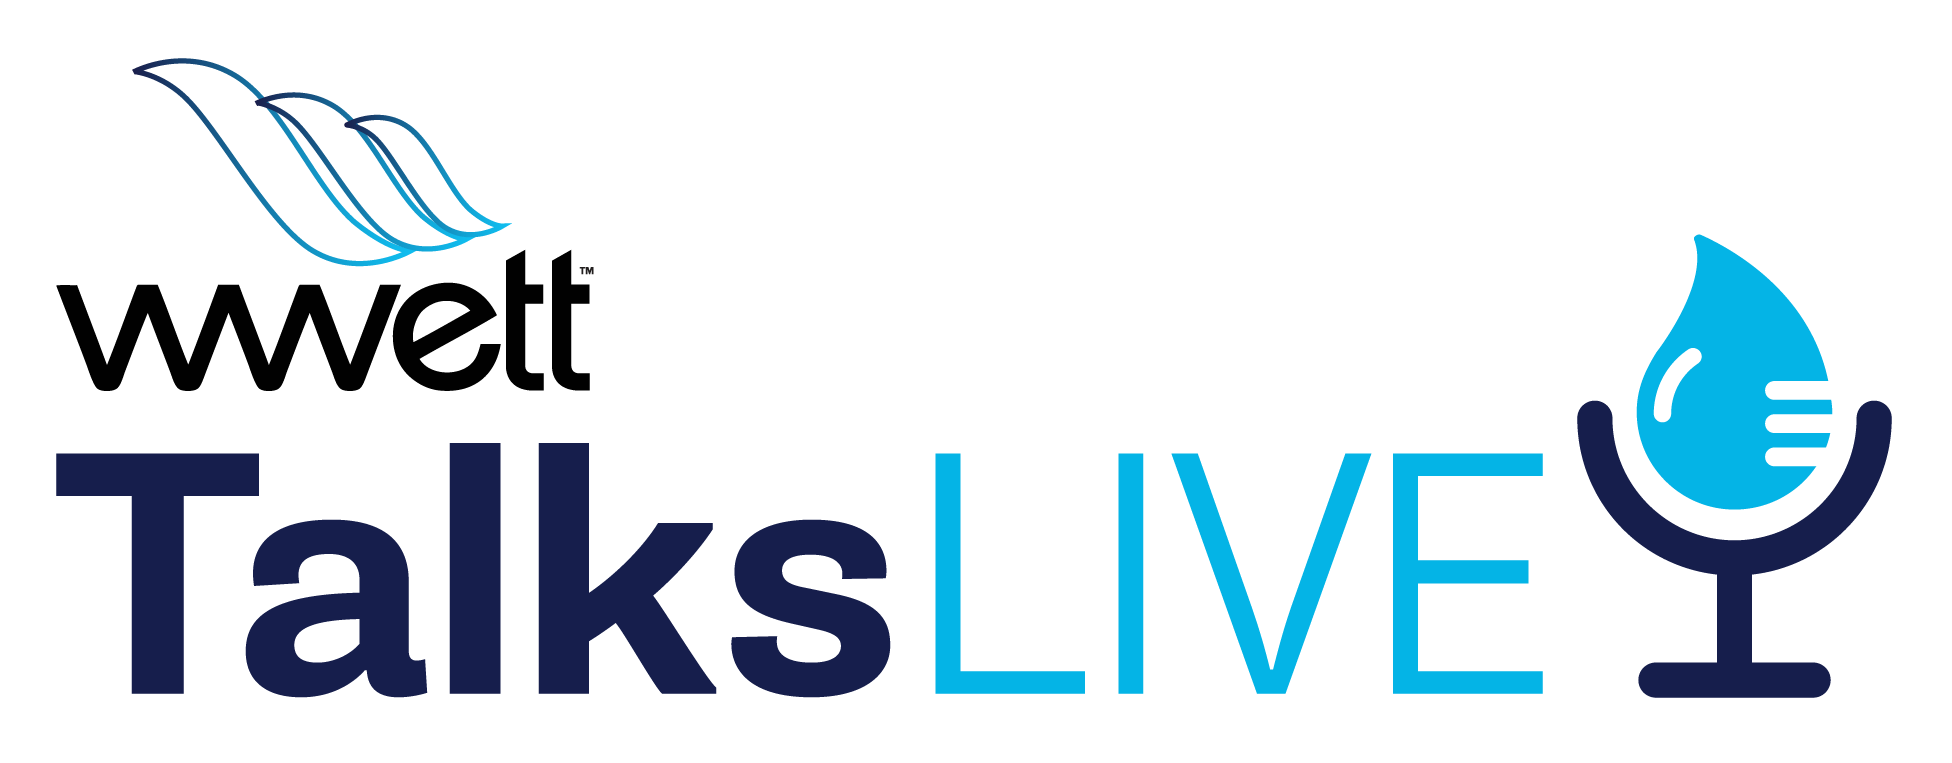 WWETT Talks Live logo